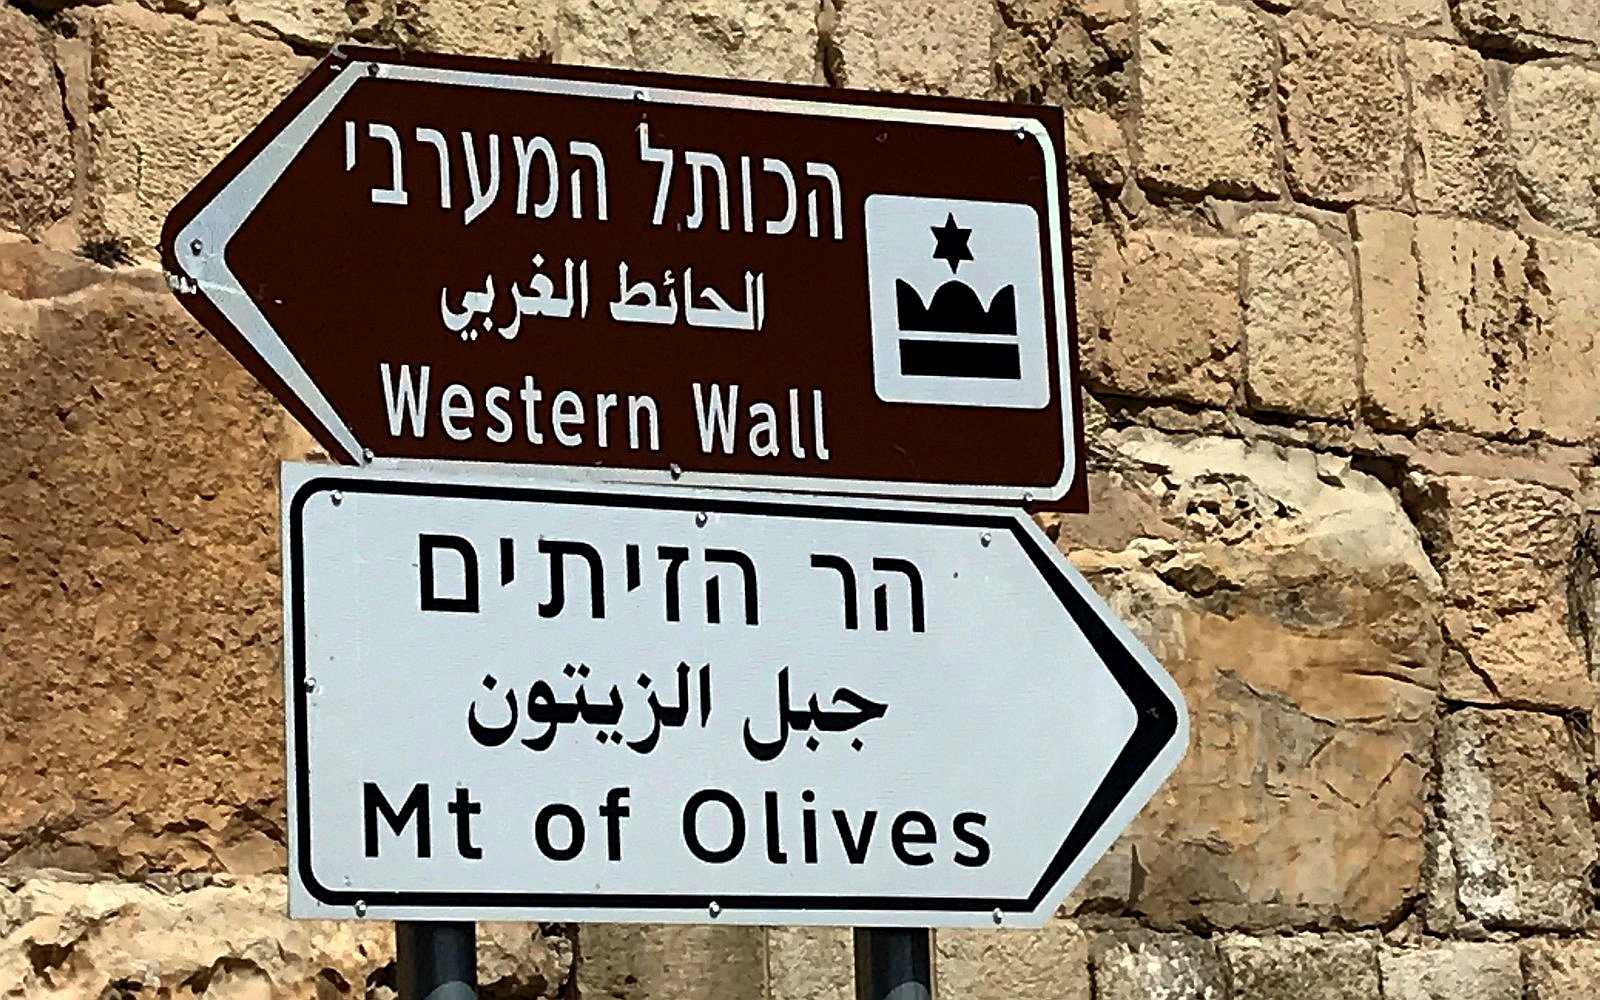 rozcestník, ukazatel, signpost, Zeď nářků - Western Wall, Olivová hora Mt of Olives, Jerusalem / foto -ima-